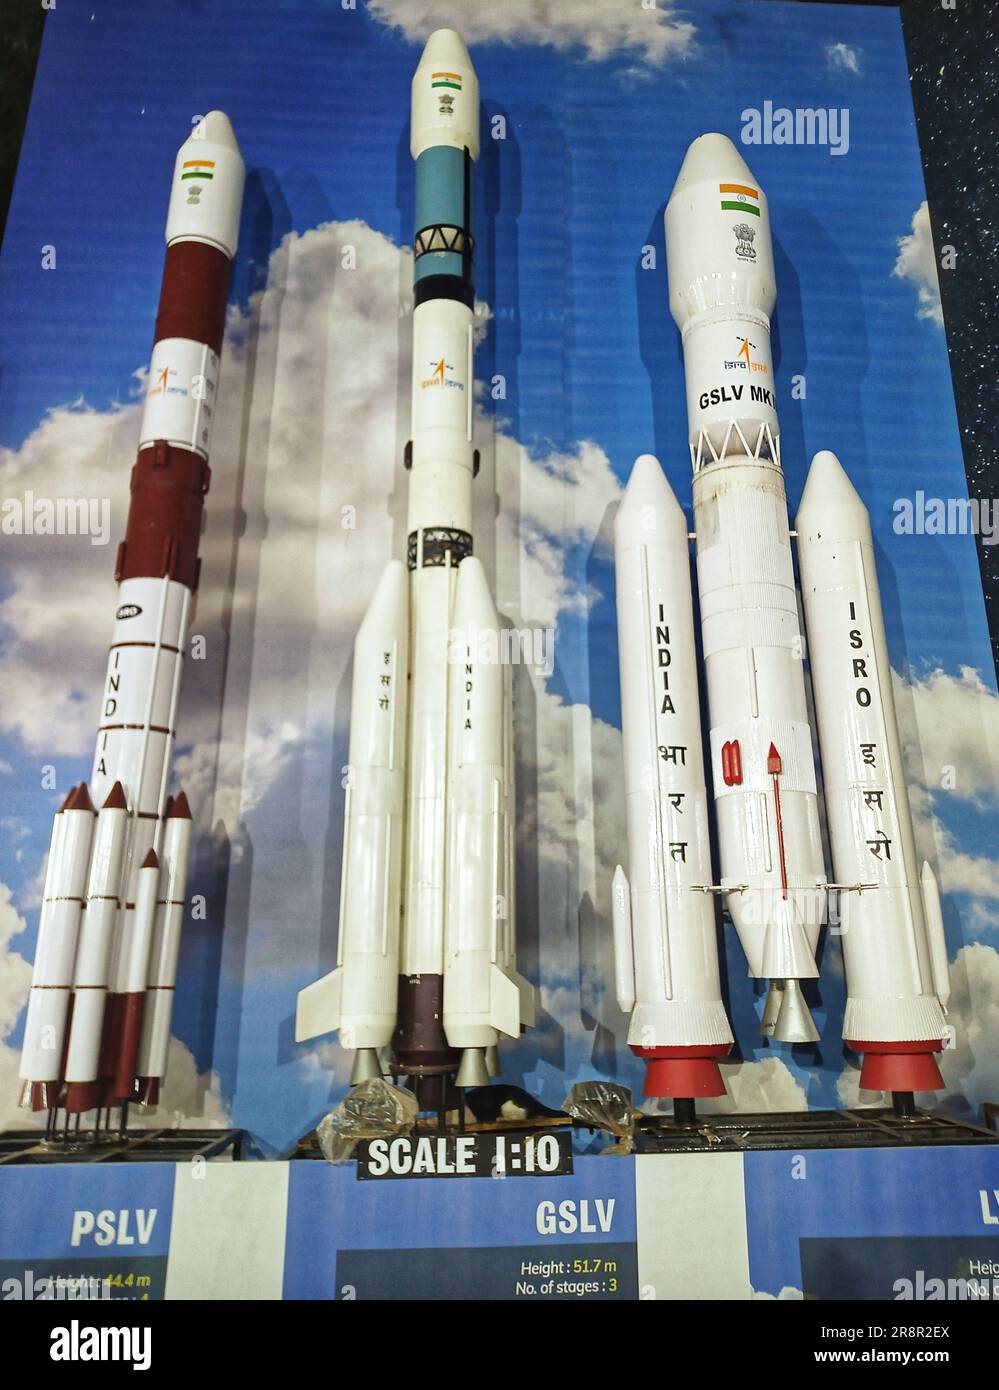 isro, indische Raketen, ISRO Indische Weltraumforschungsorganisation, Satellitenstartfahrzeug-Raketenmodell, pslv, gslv, indische Weltraumforschung, Raumfahrttechnologie Stockfoto